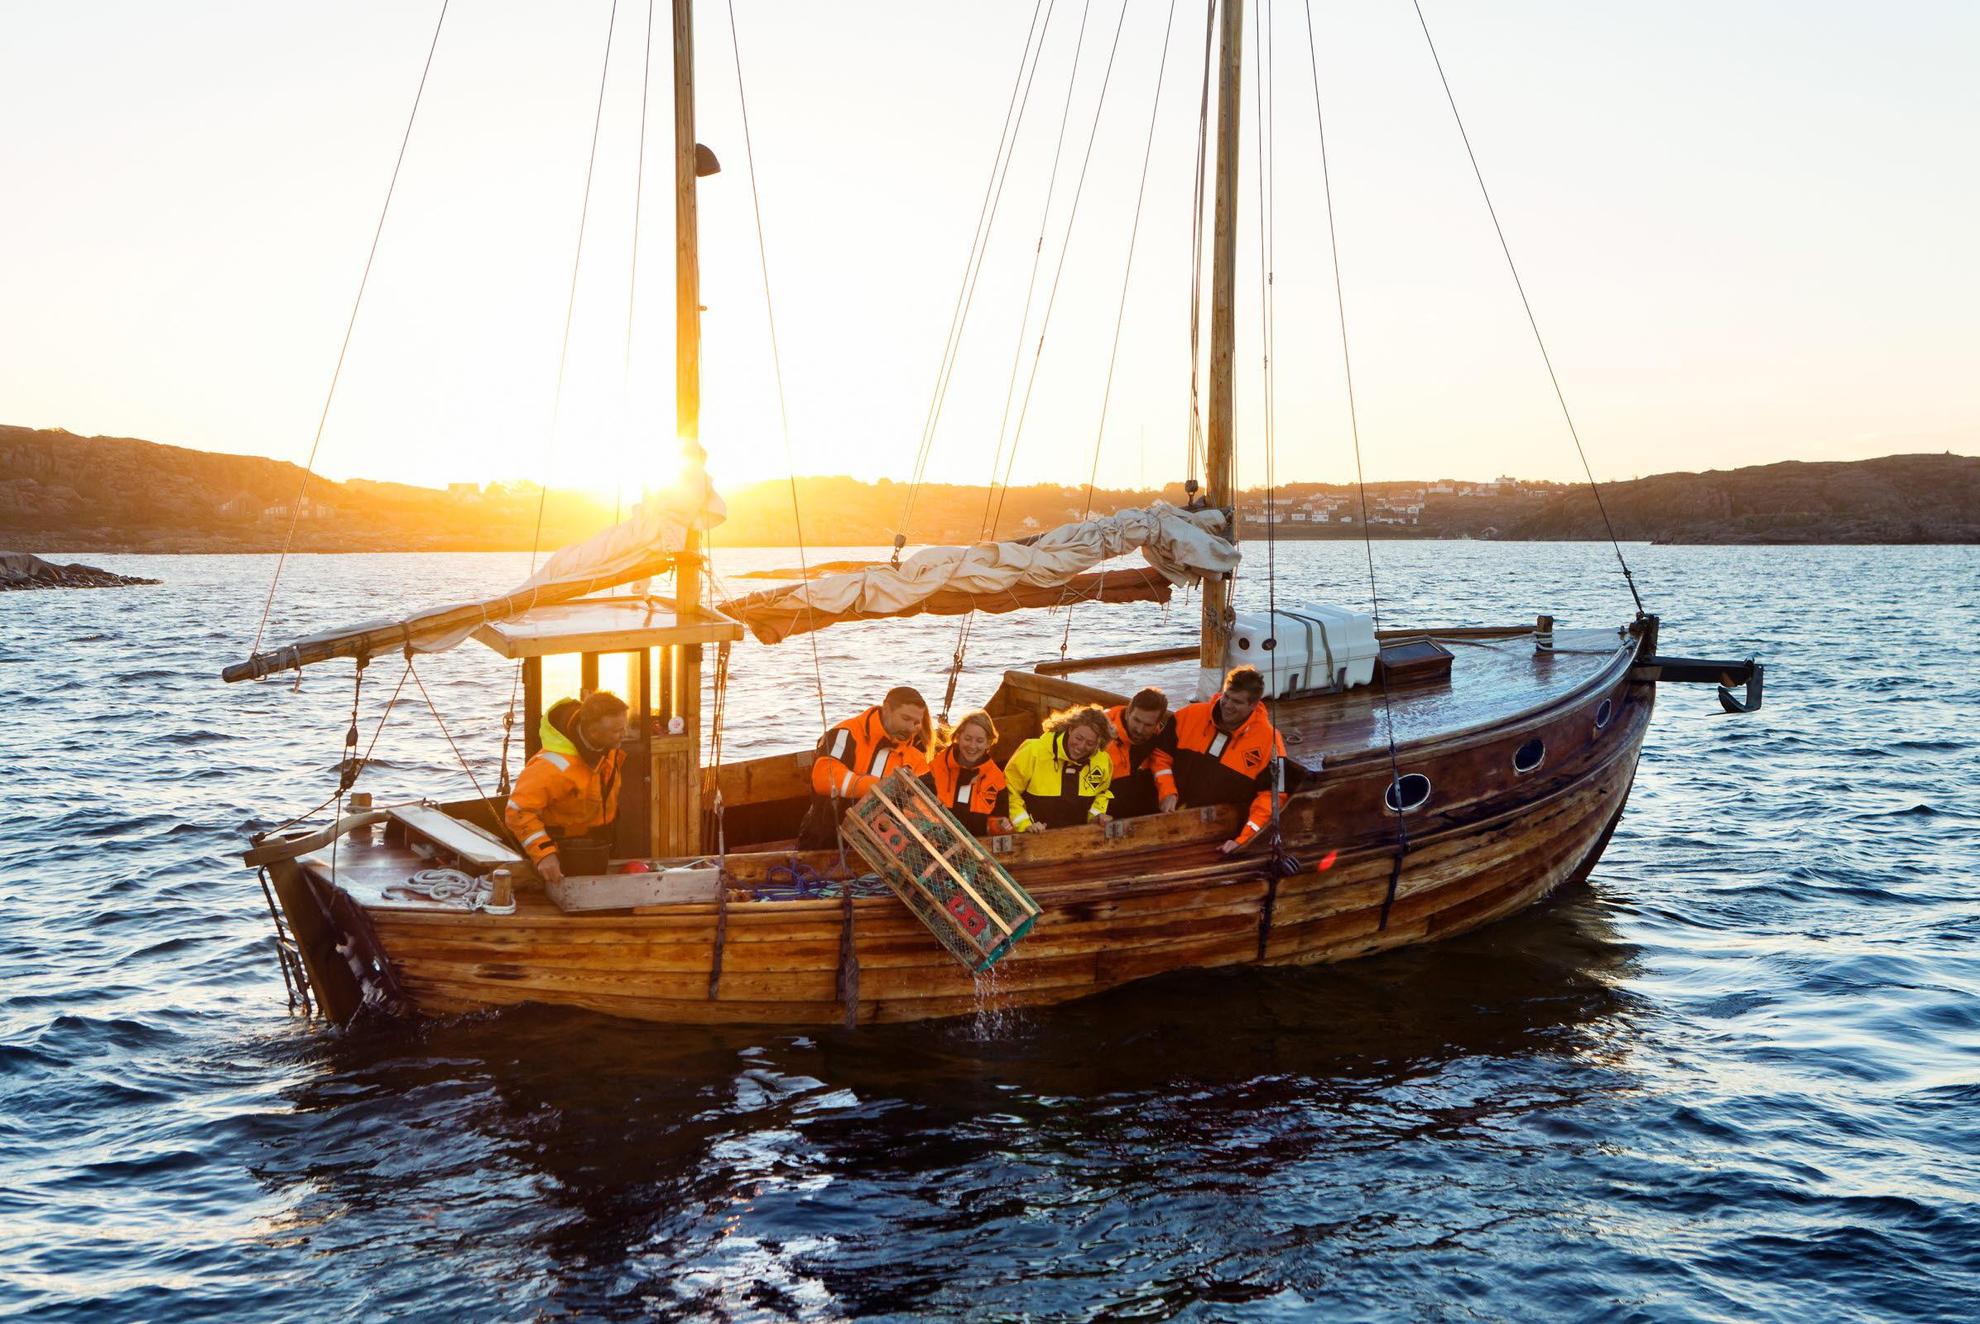 Een houten zeilboot met zes personen, waarvan er één een kreeftenkooi in zee gooit. Op de achtergrond gaat de zon onder.